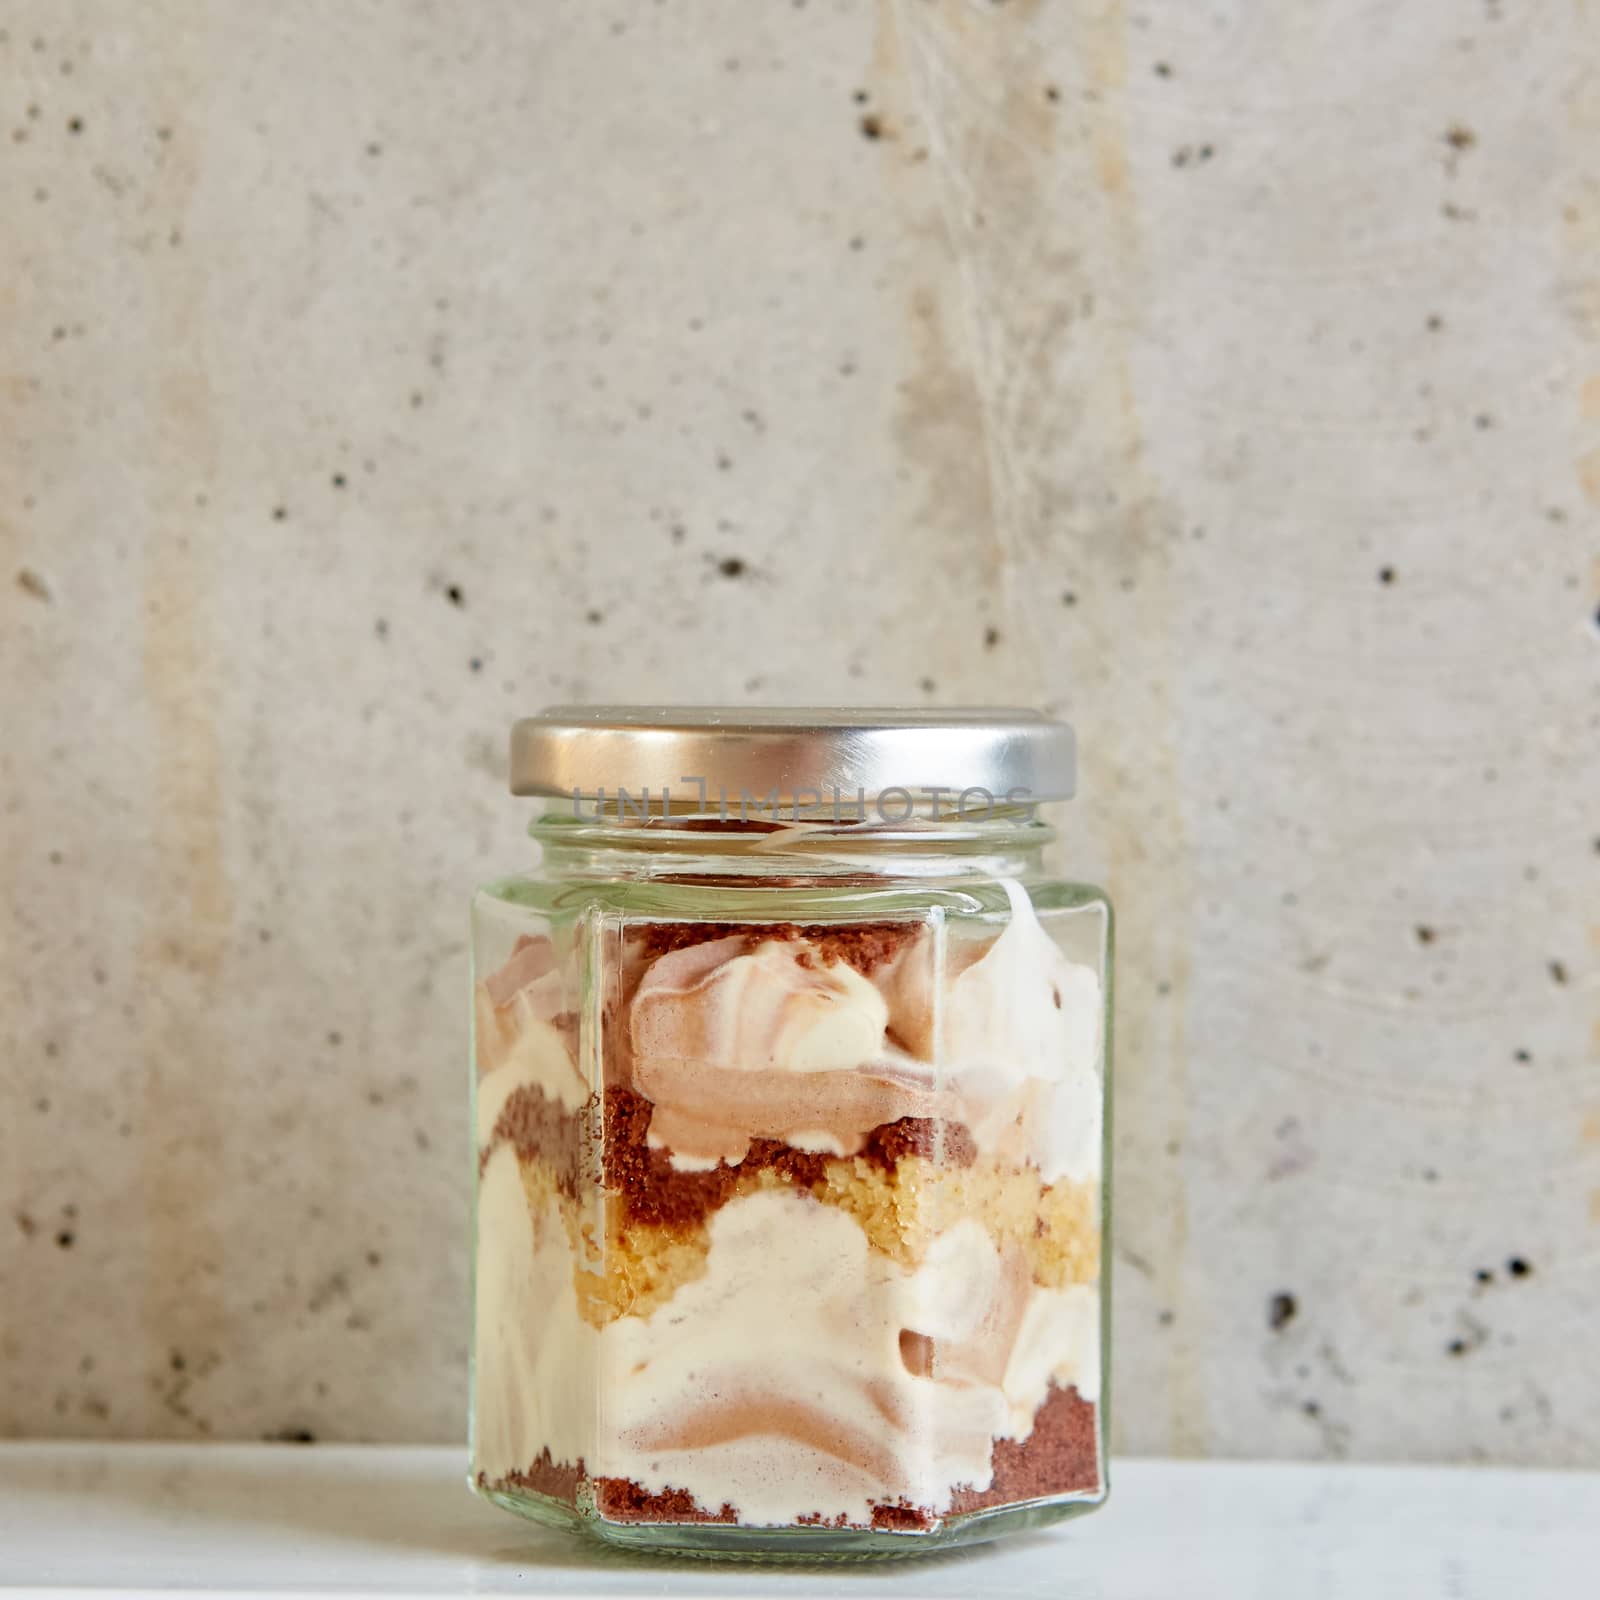 Homemade cheesecake in a glass jar by sarymsakov